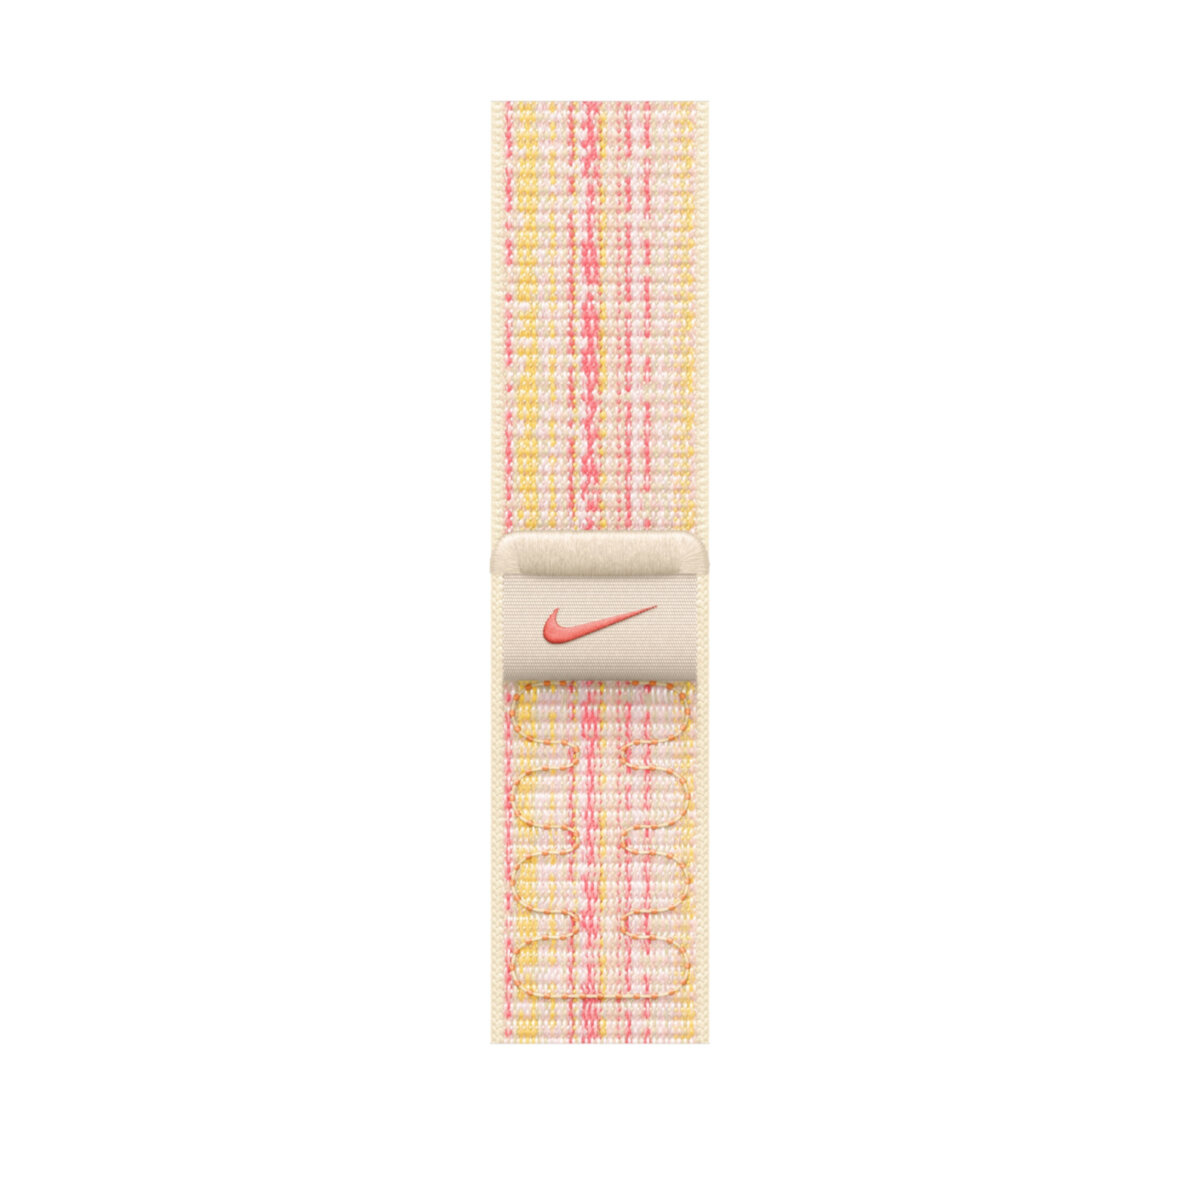 Opaska sportowa Nike Apple MUJY3ZM/A różowa od frontu na białym tle